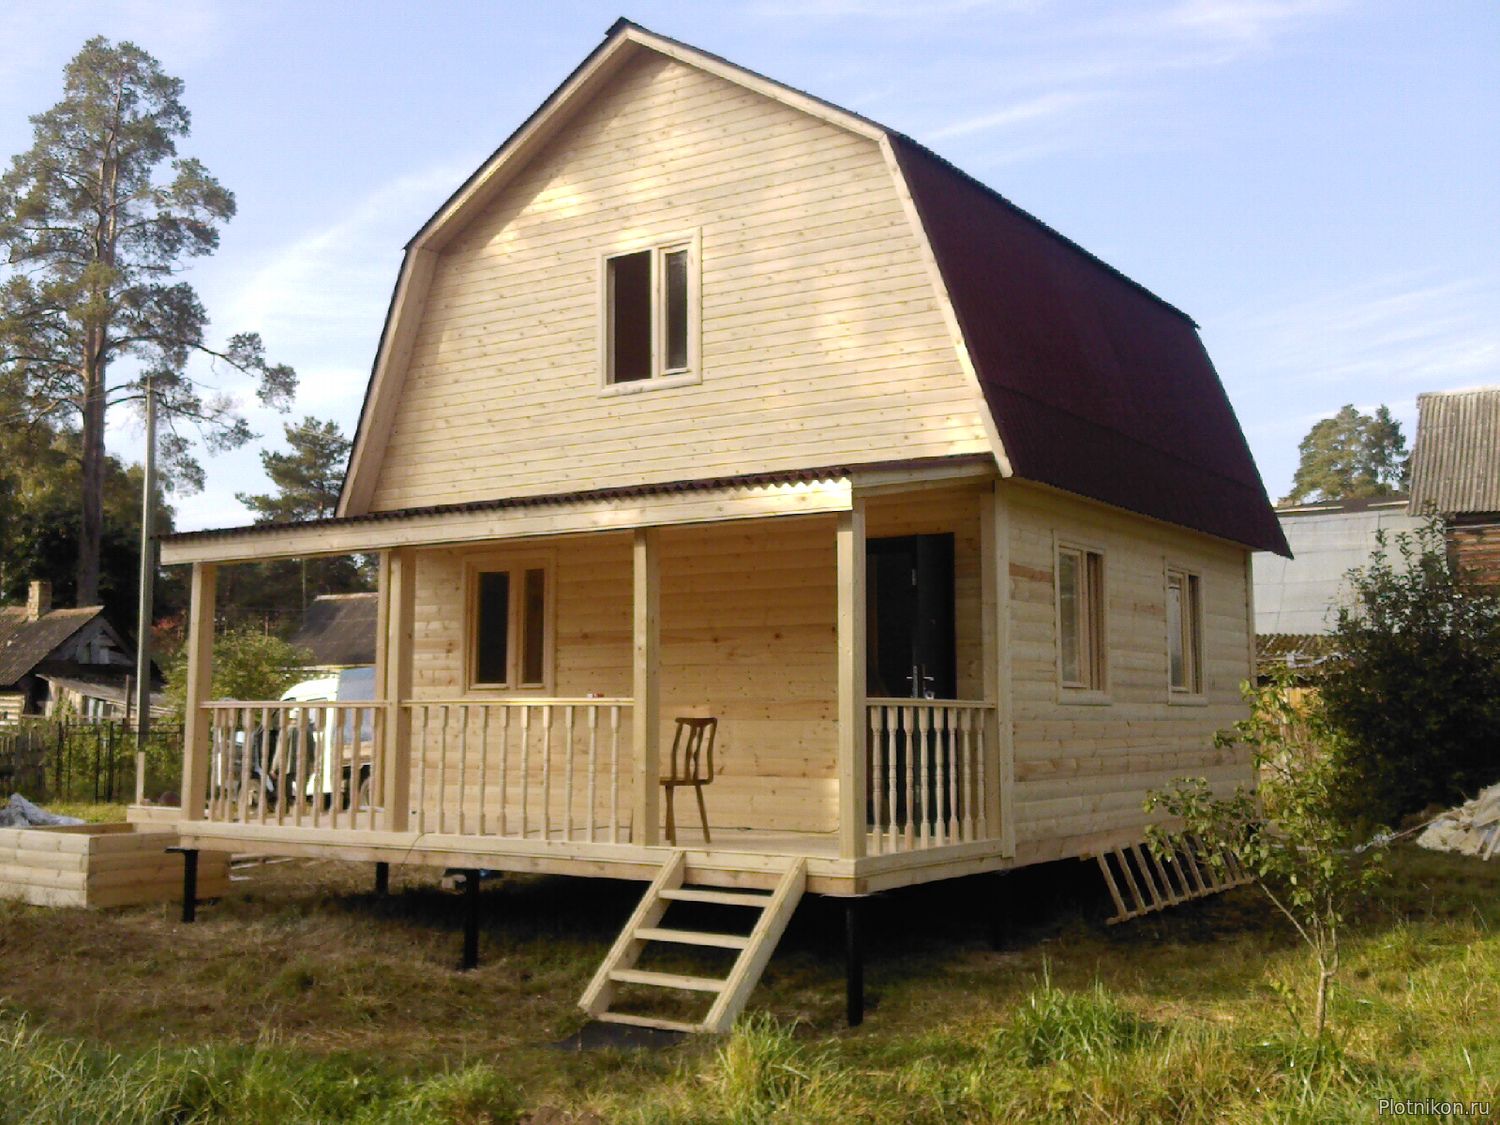 Дачный домик из бруса - экономичный вариант строительства